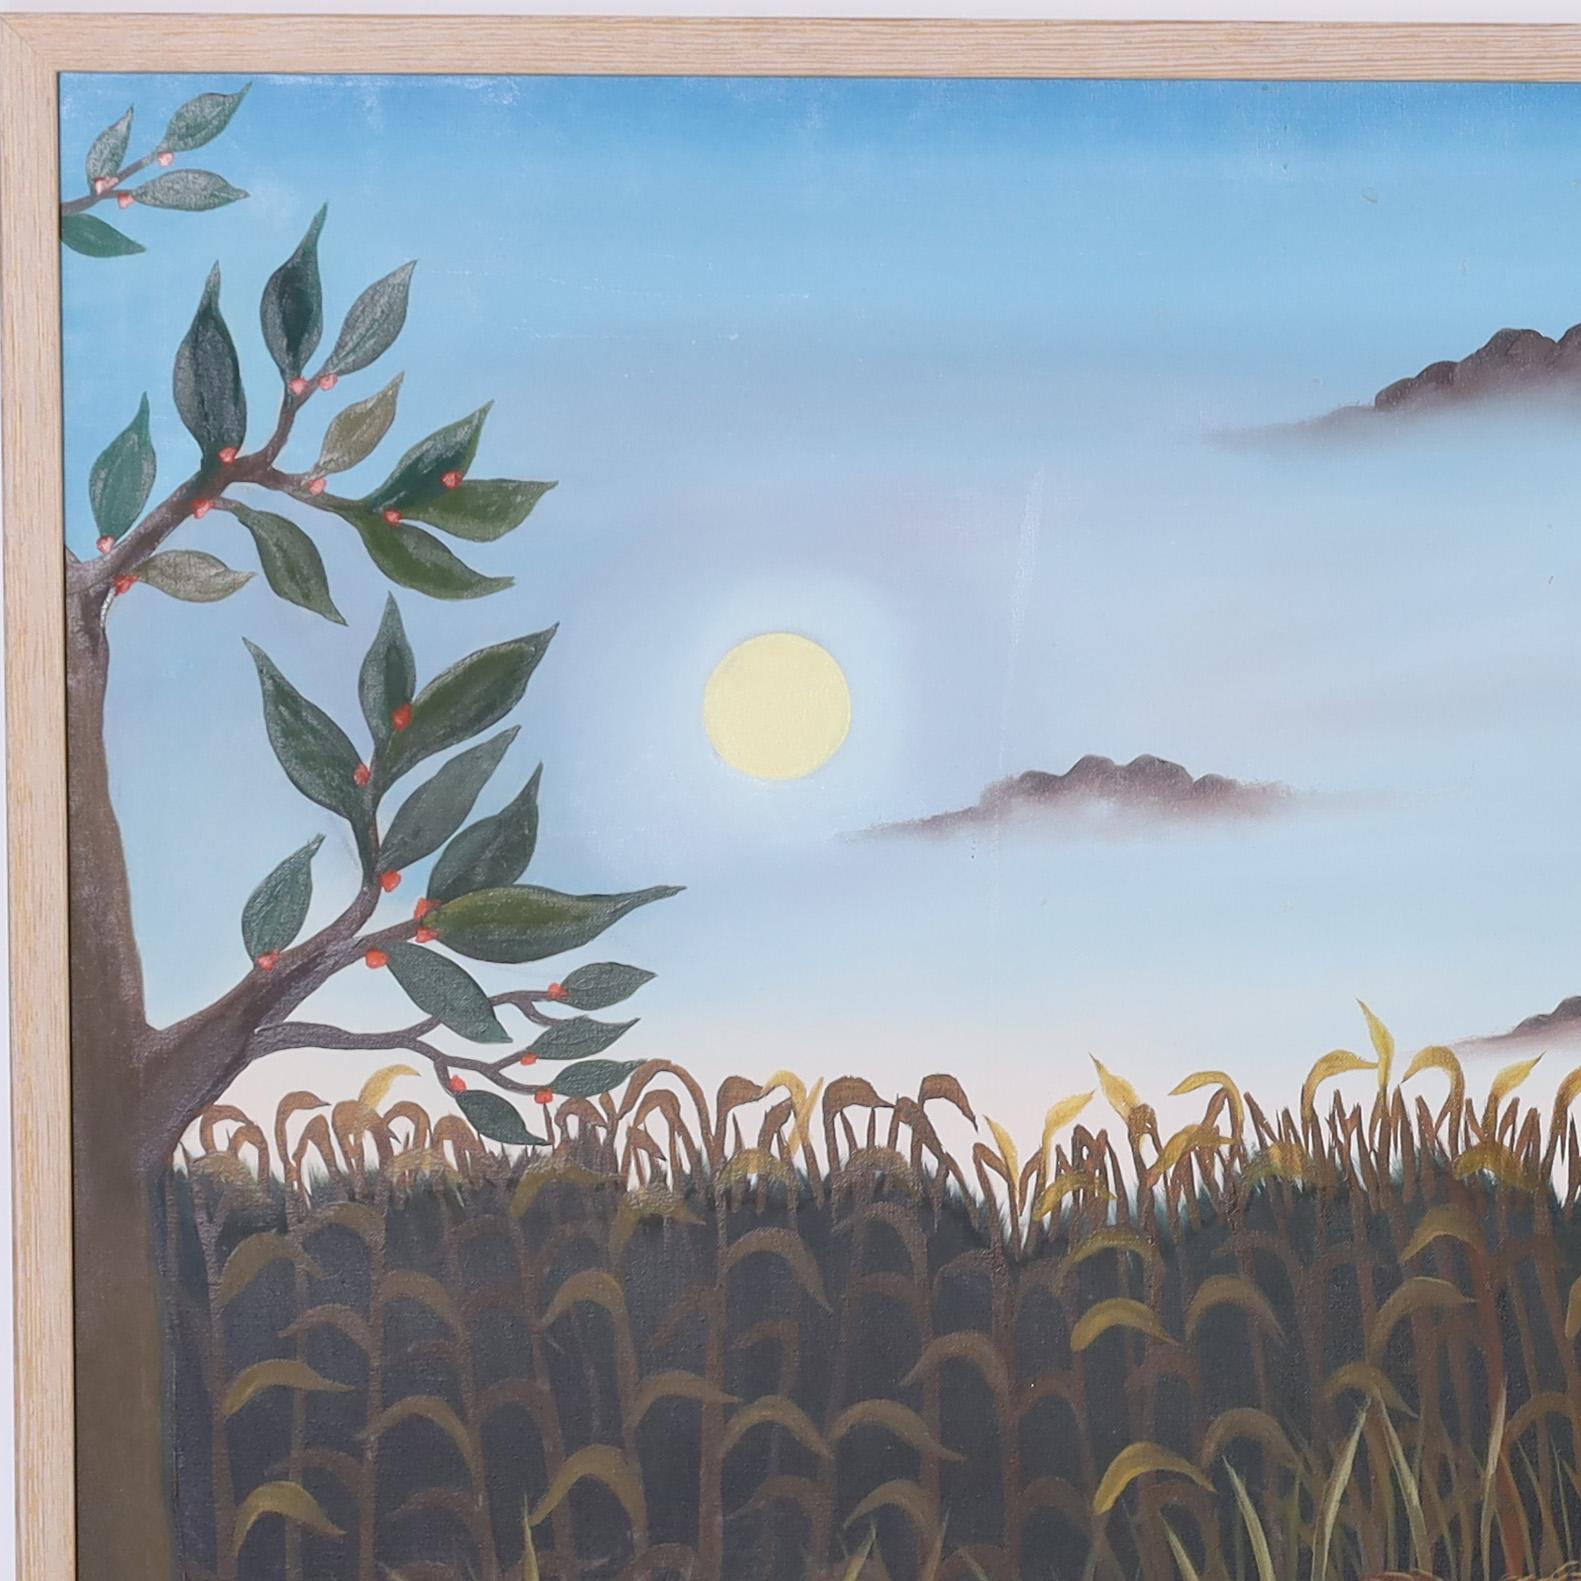 Charmante peinture acrylique sur toile du milieu du siècle représentant un lion vieillissant au repos avec des fleurs et des arbres, exécutée dans un charmant style naïf. Signé Paradis 81 et présenté dans un cadre en bois.